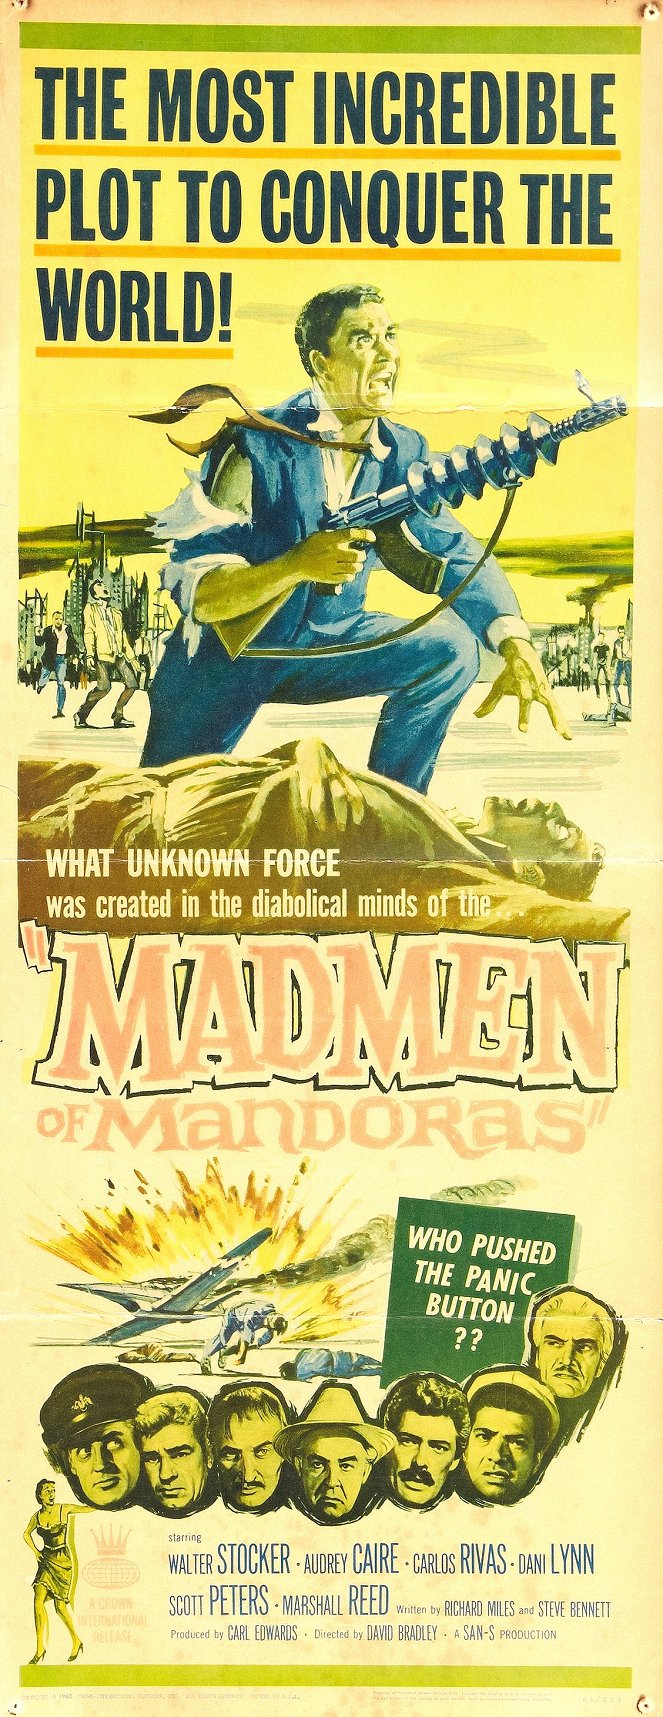 The Madmen of Mandoras - Posters